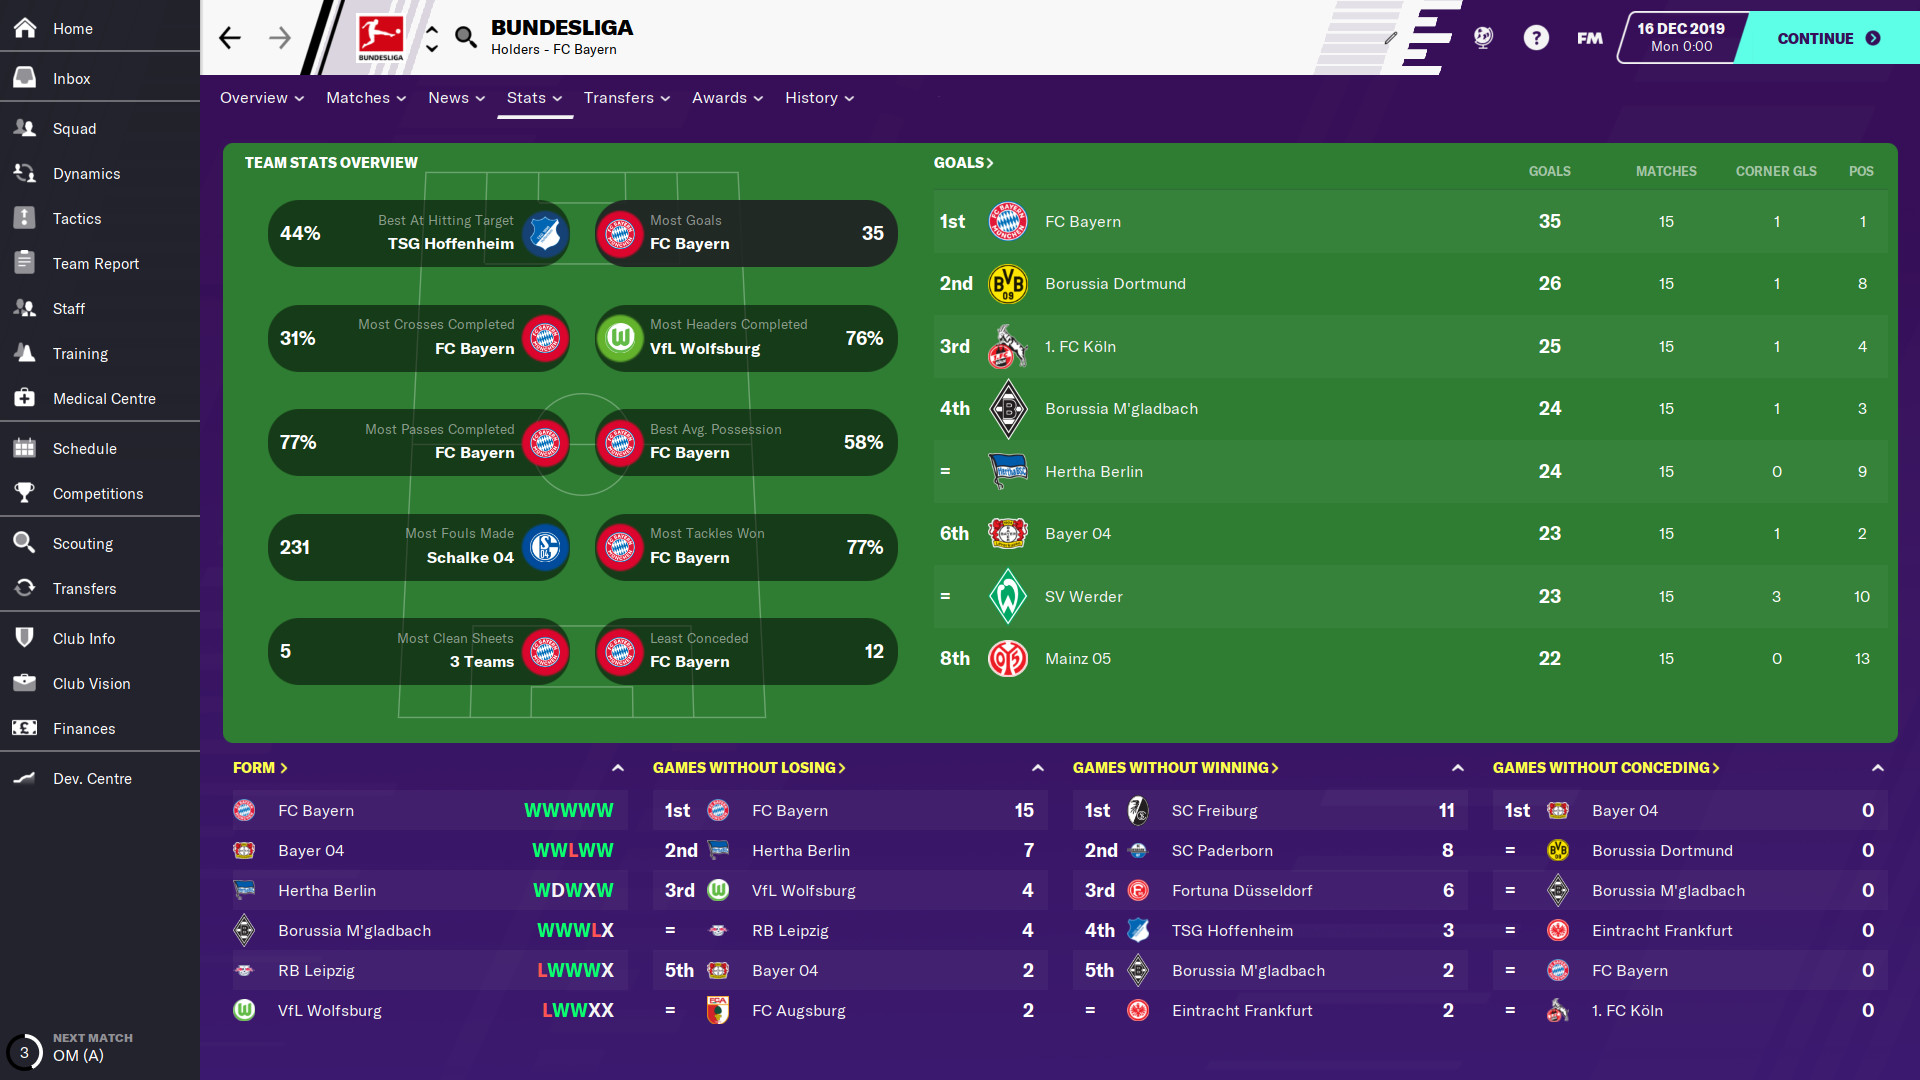 Football Manager 2020 screenshot